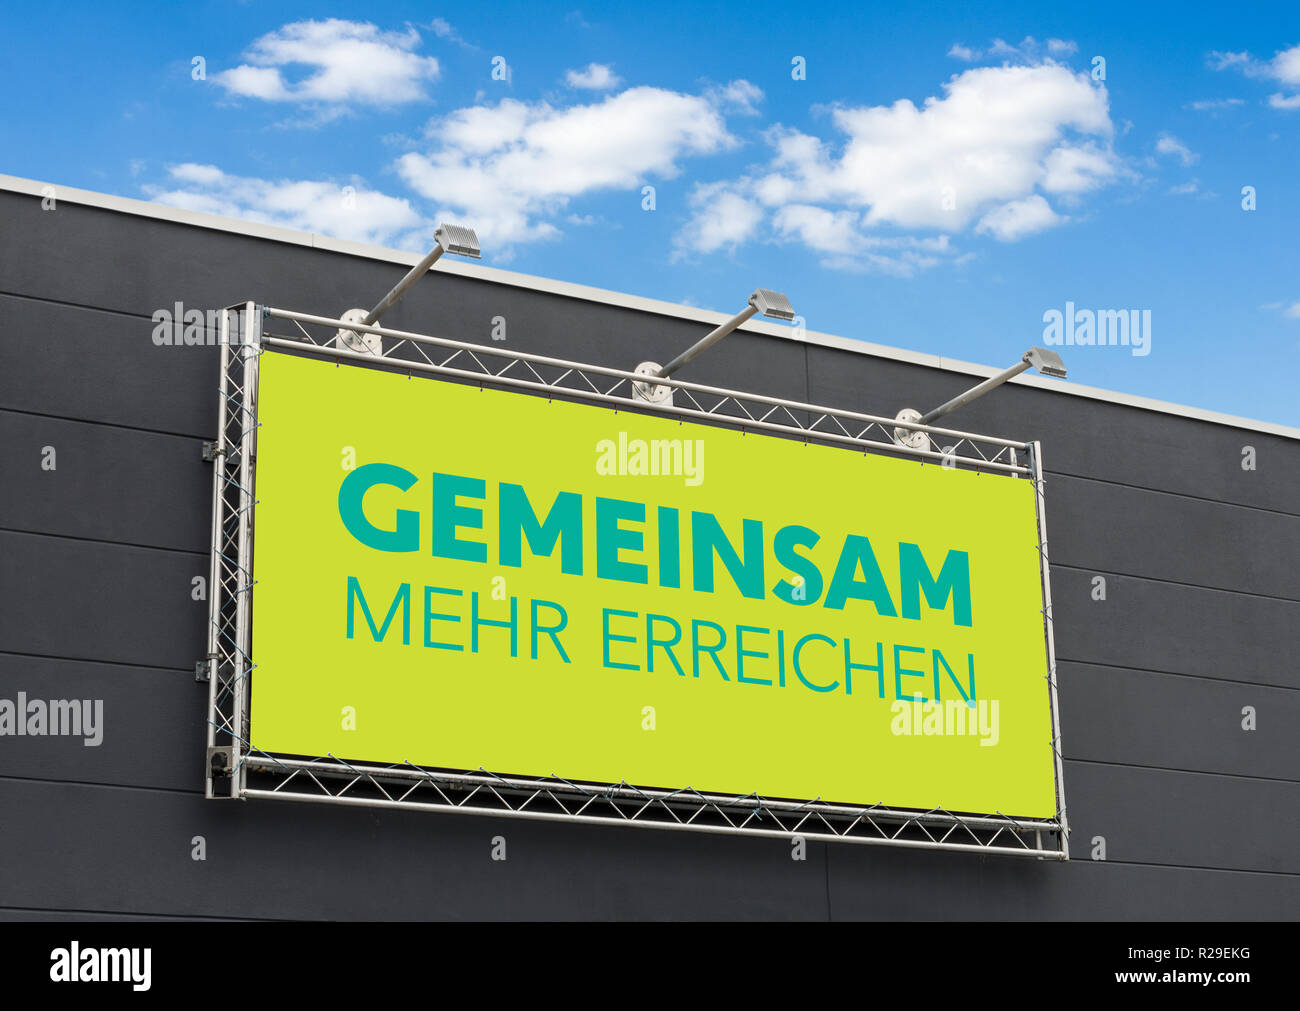 The german words Gemeinsam mehr erreichen (Together we can achieve more) written on a billboard Stock Photo